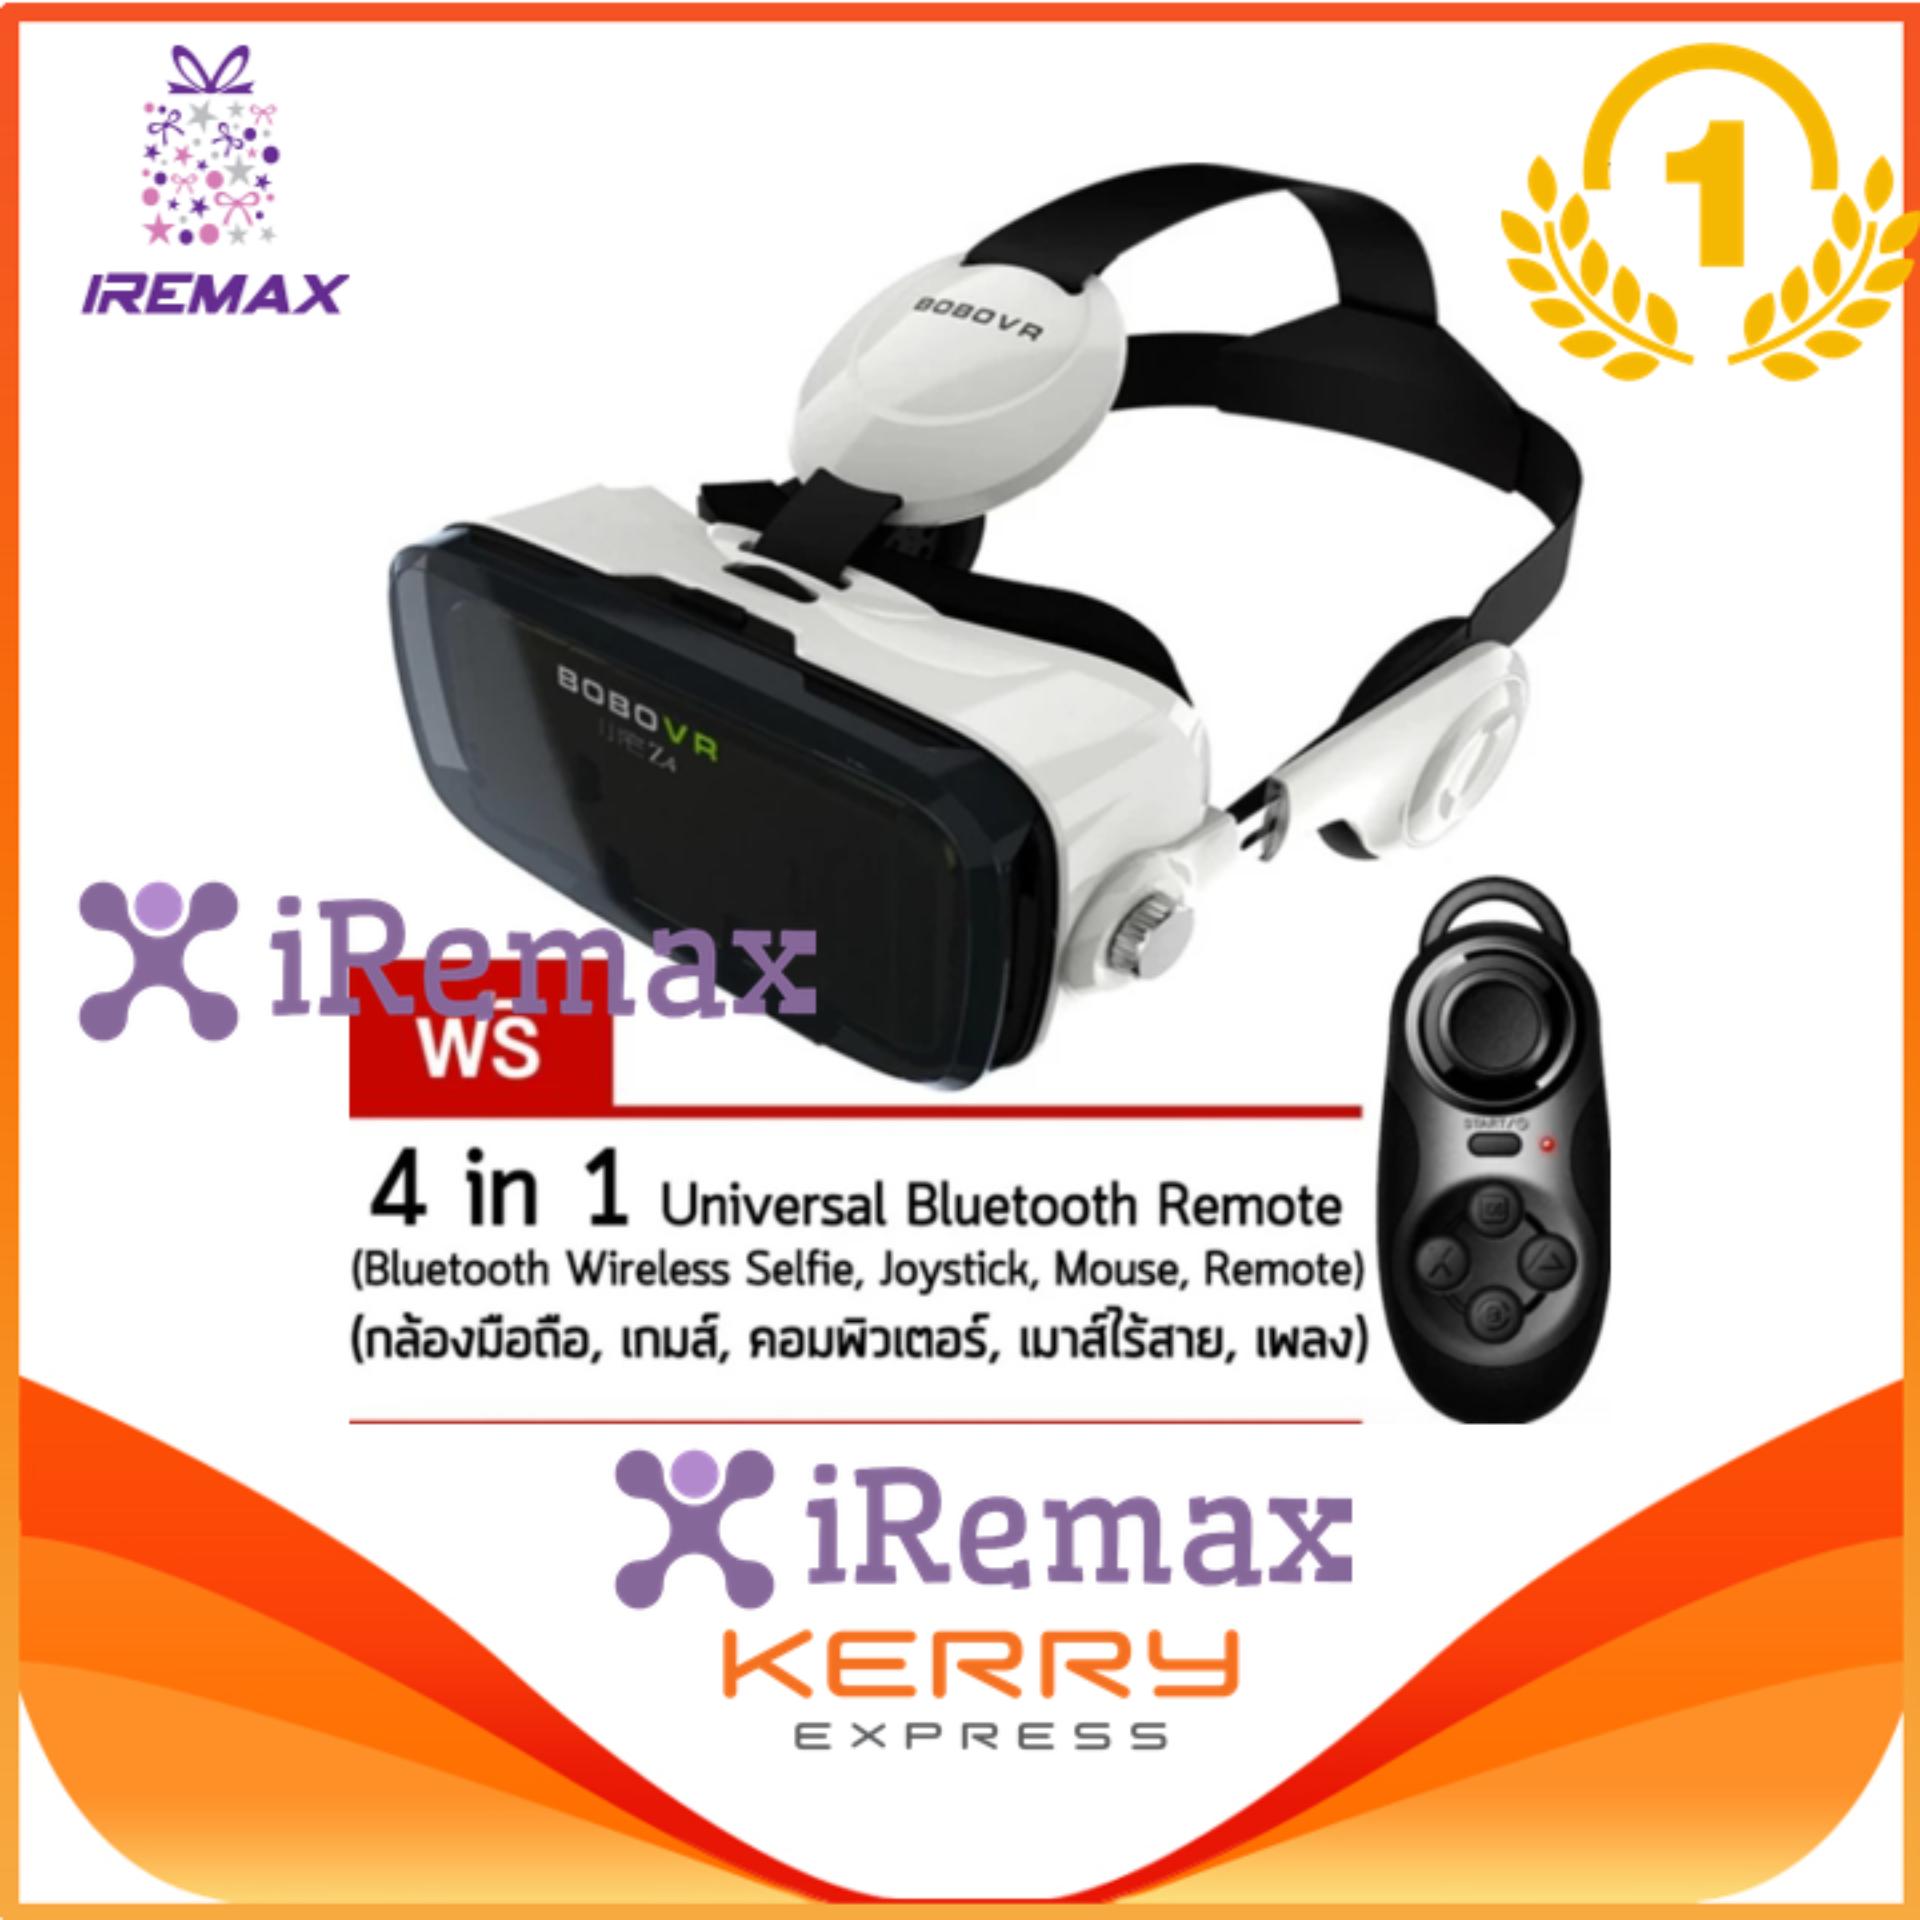 iremax 2017 แว่น 3D สำหรับสมาร์ทโฟนทุกรุ่น 2.0 พร้อมหูฟังไฮไฟในตัว รุ่น Z4 ความจริงเสมือนแว่นตาระดับ3D แถมฟรี Remote Joystick (price:390-)